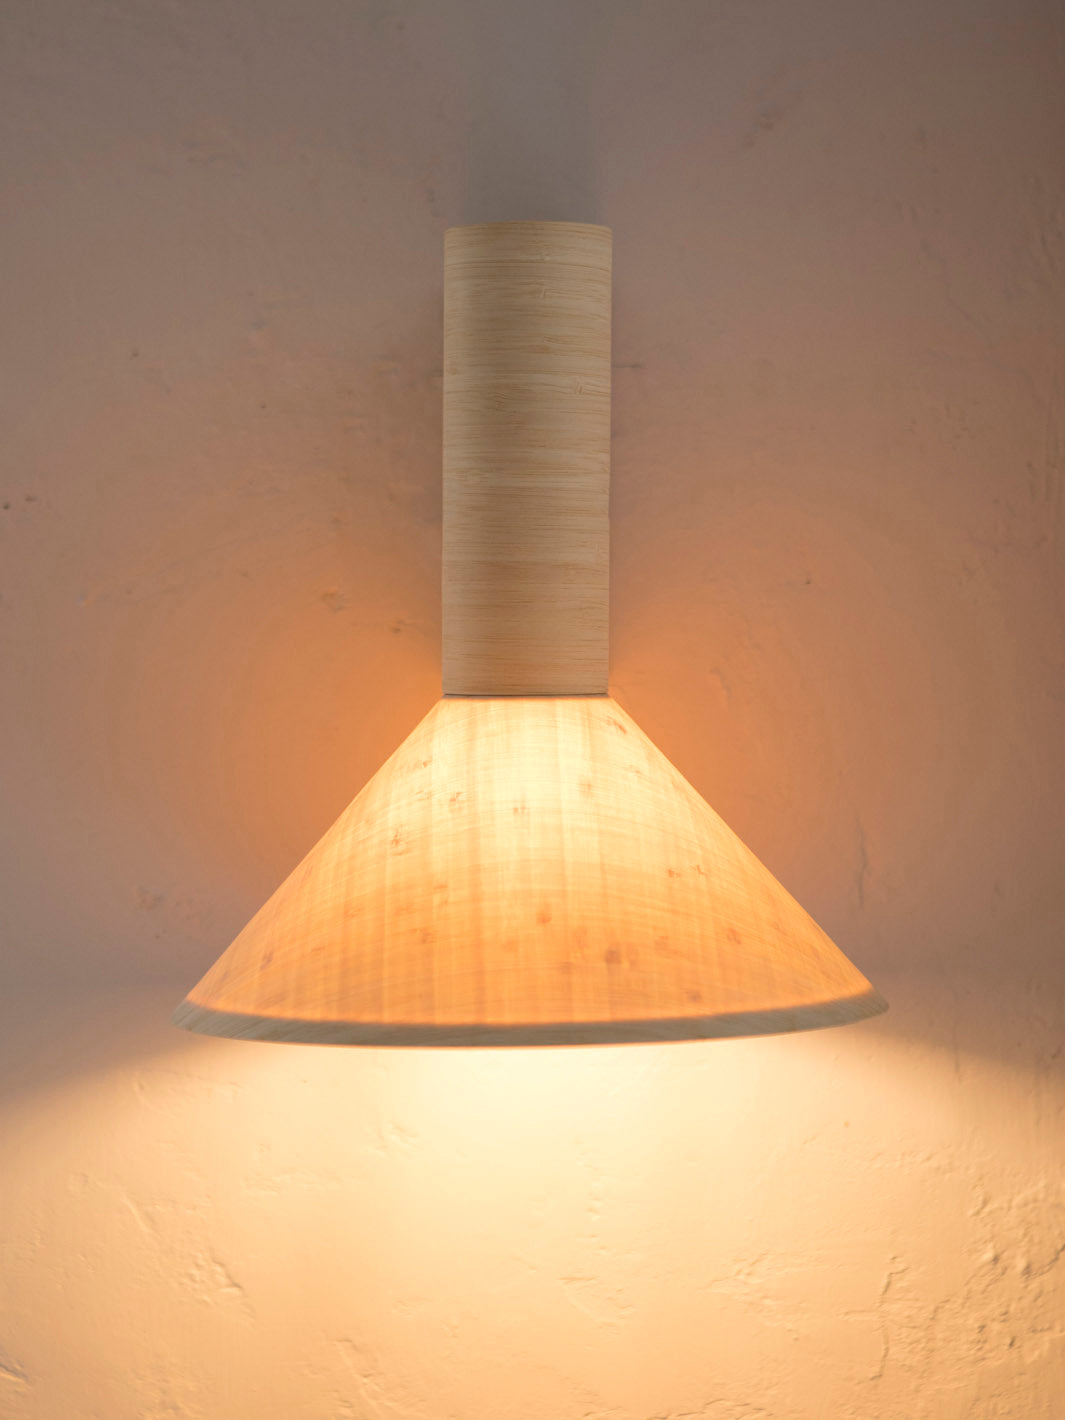 Natural bamboo wall light